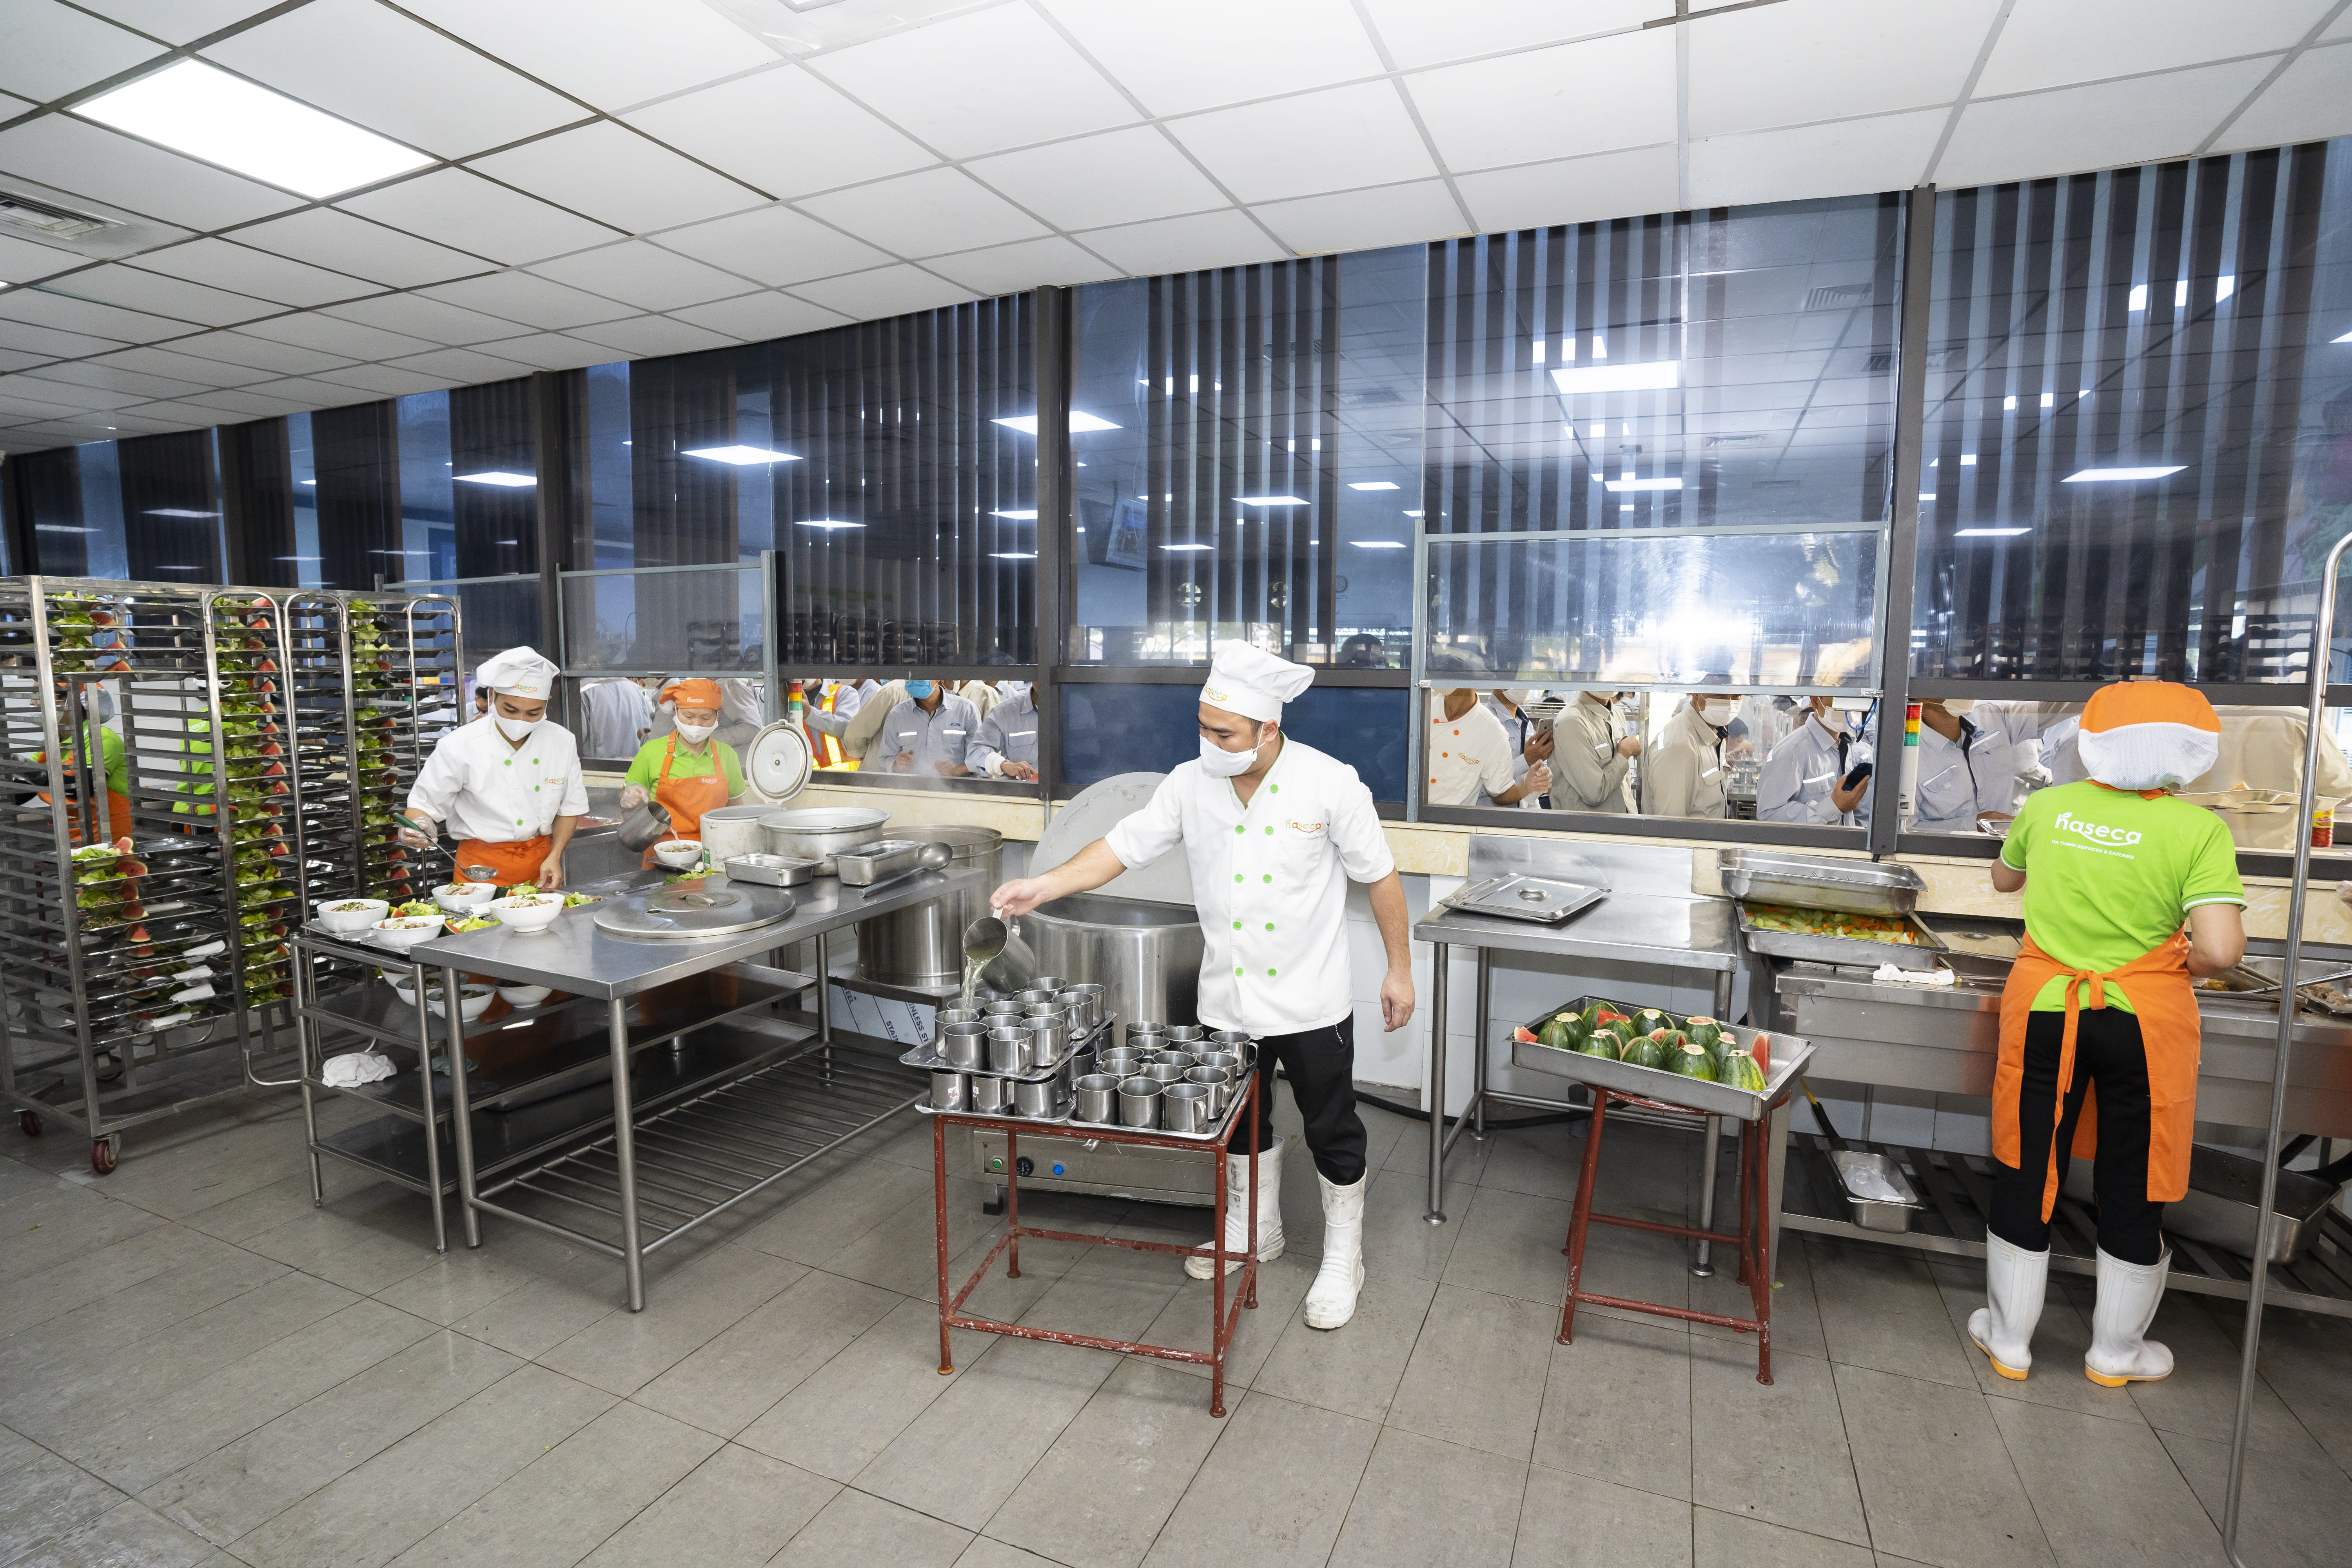 Dịch vụ suất ăn công nghiệp Haseca đã có mặt tại Hà Tĩnh với dịch vụ chất lượng, tận tâm và ATVSTP